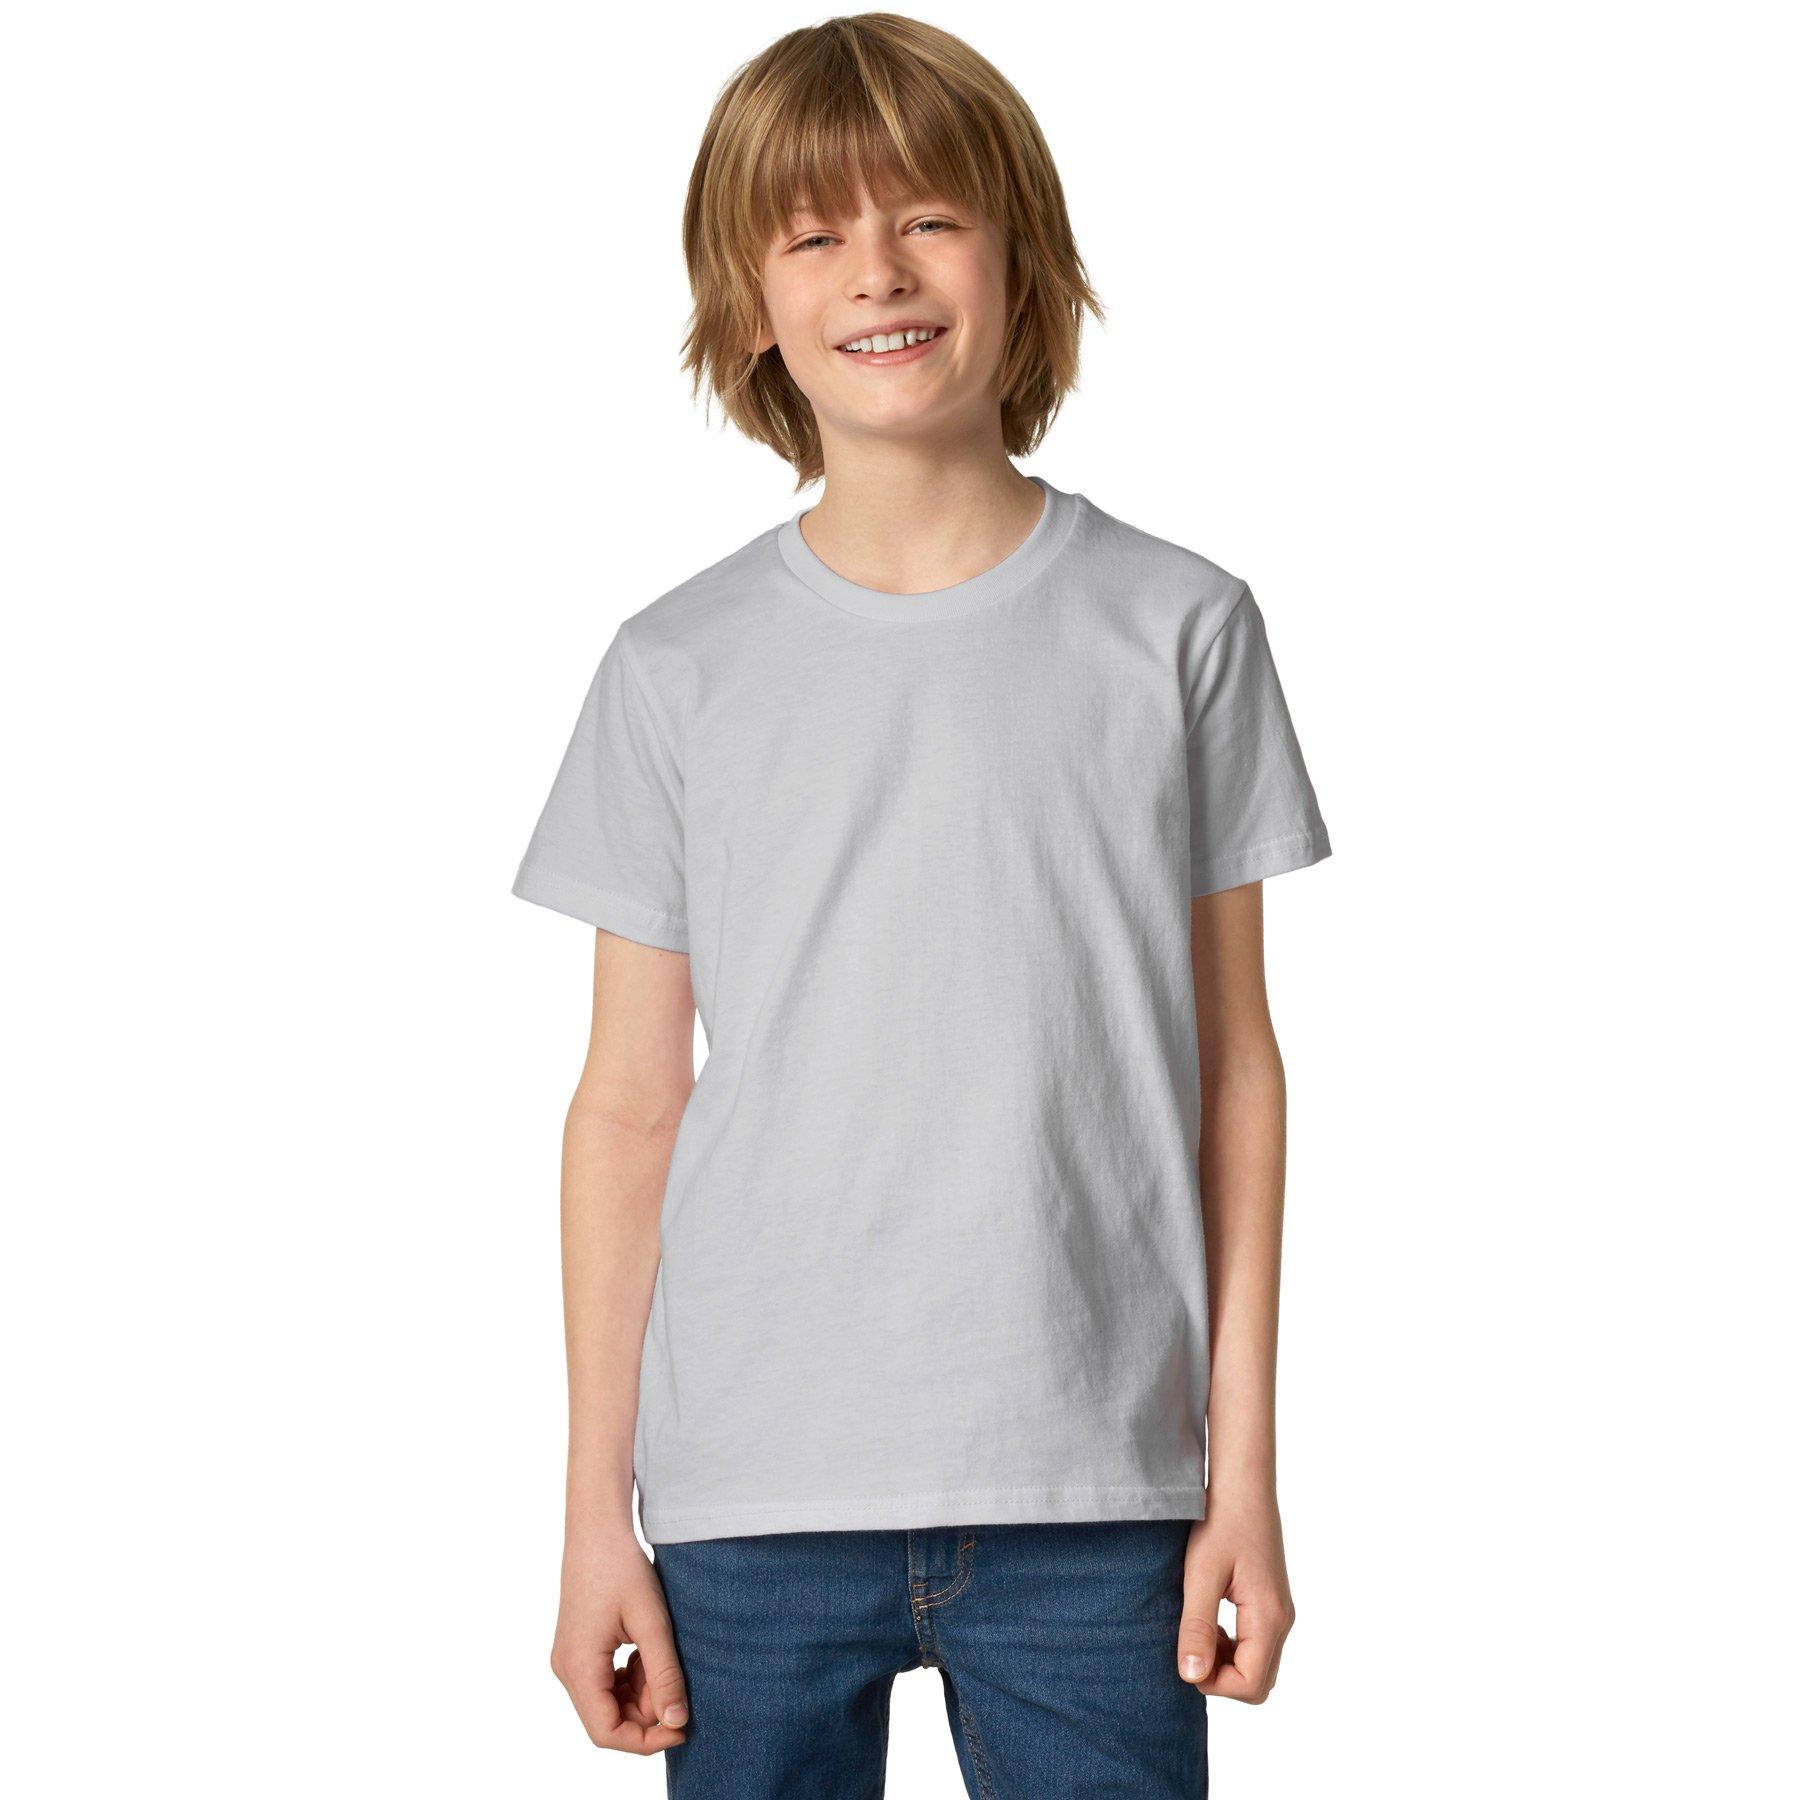 T-shirt Kinder Jungen Perlgrau 152 von Tectake